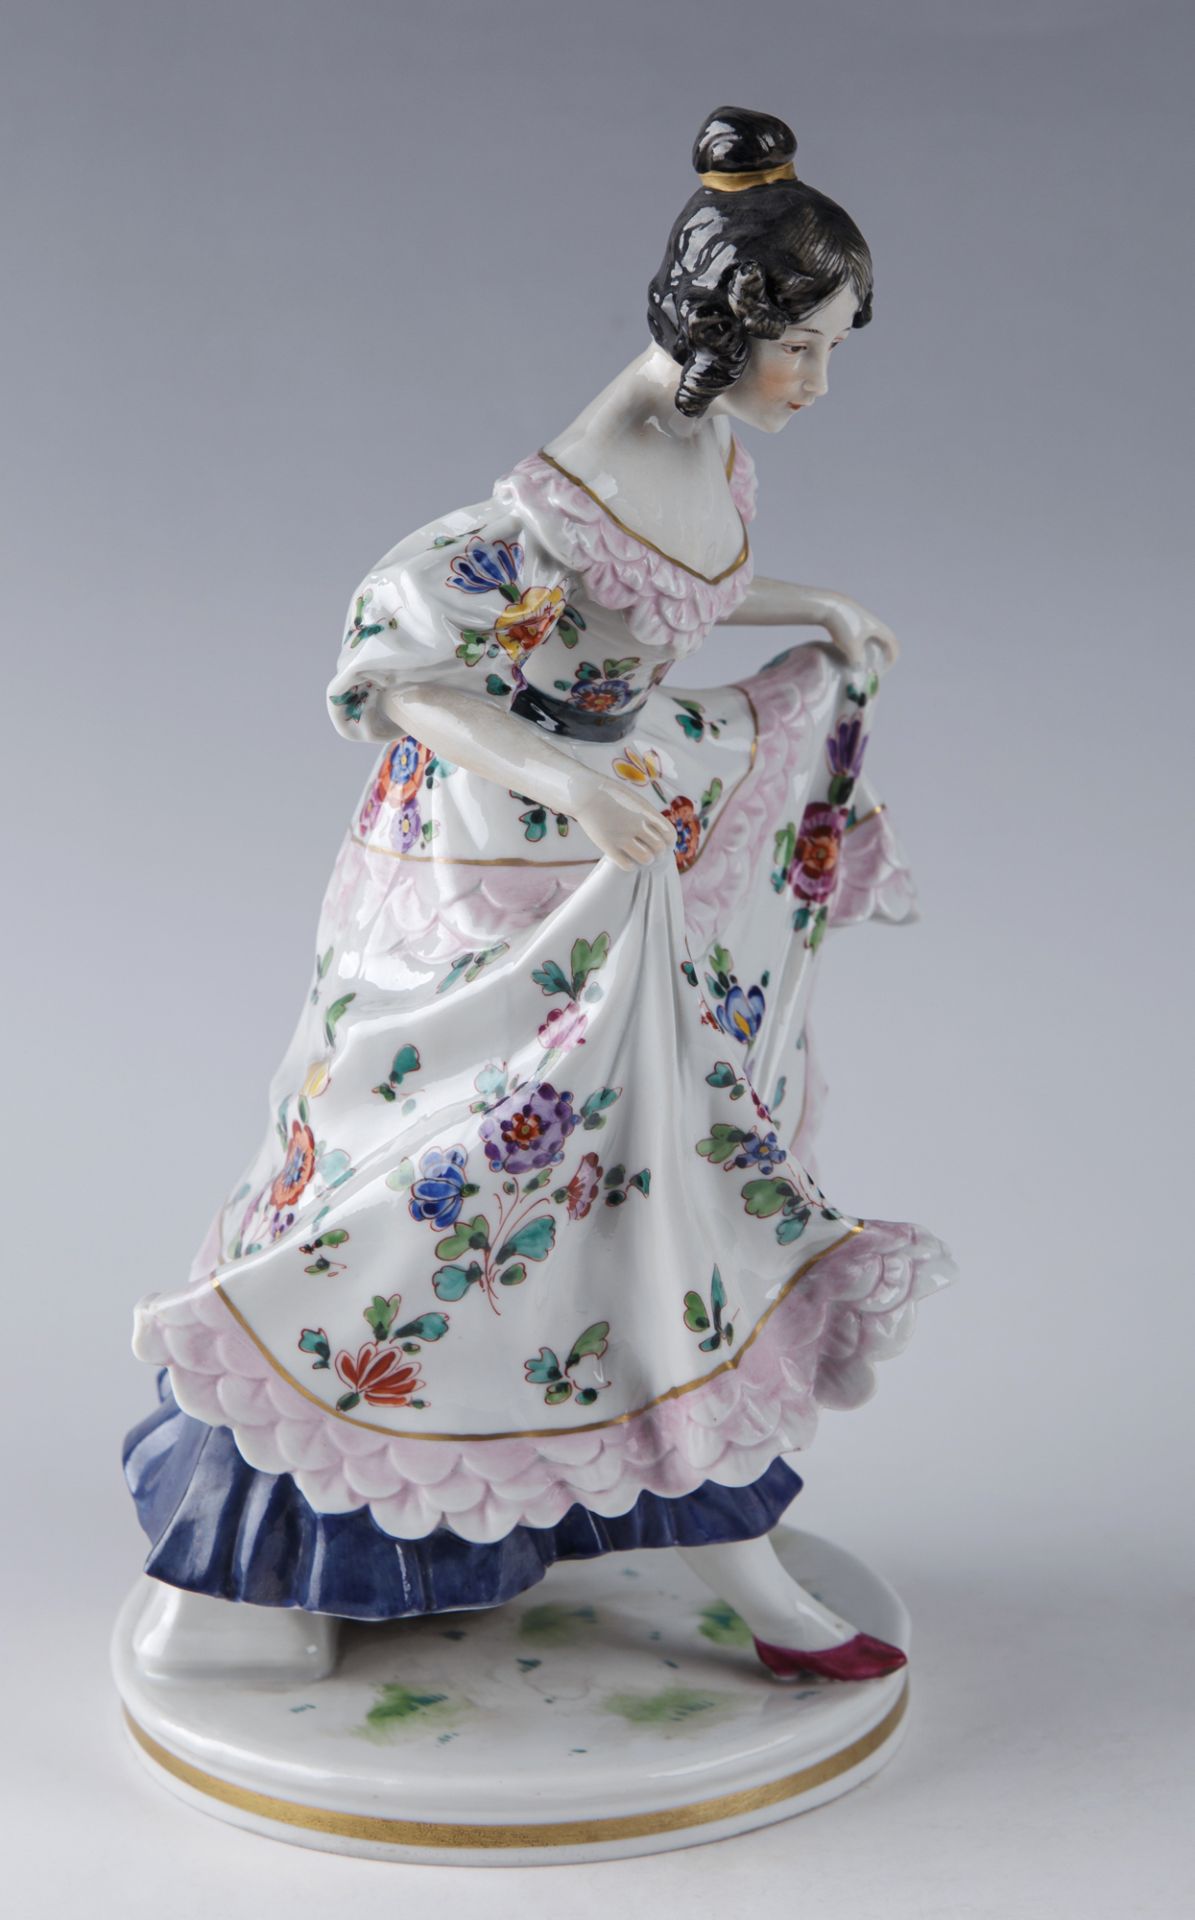 Ihr Kleid anhebende Tänzerin, Porzellanmanufaktur Ernst Bohne Söhne, Rudolstadt, 2. H. 19. Jh. - Image 3 of 5